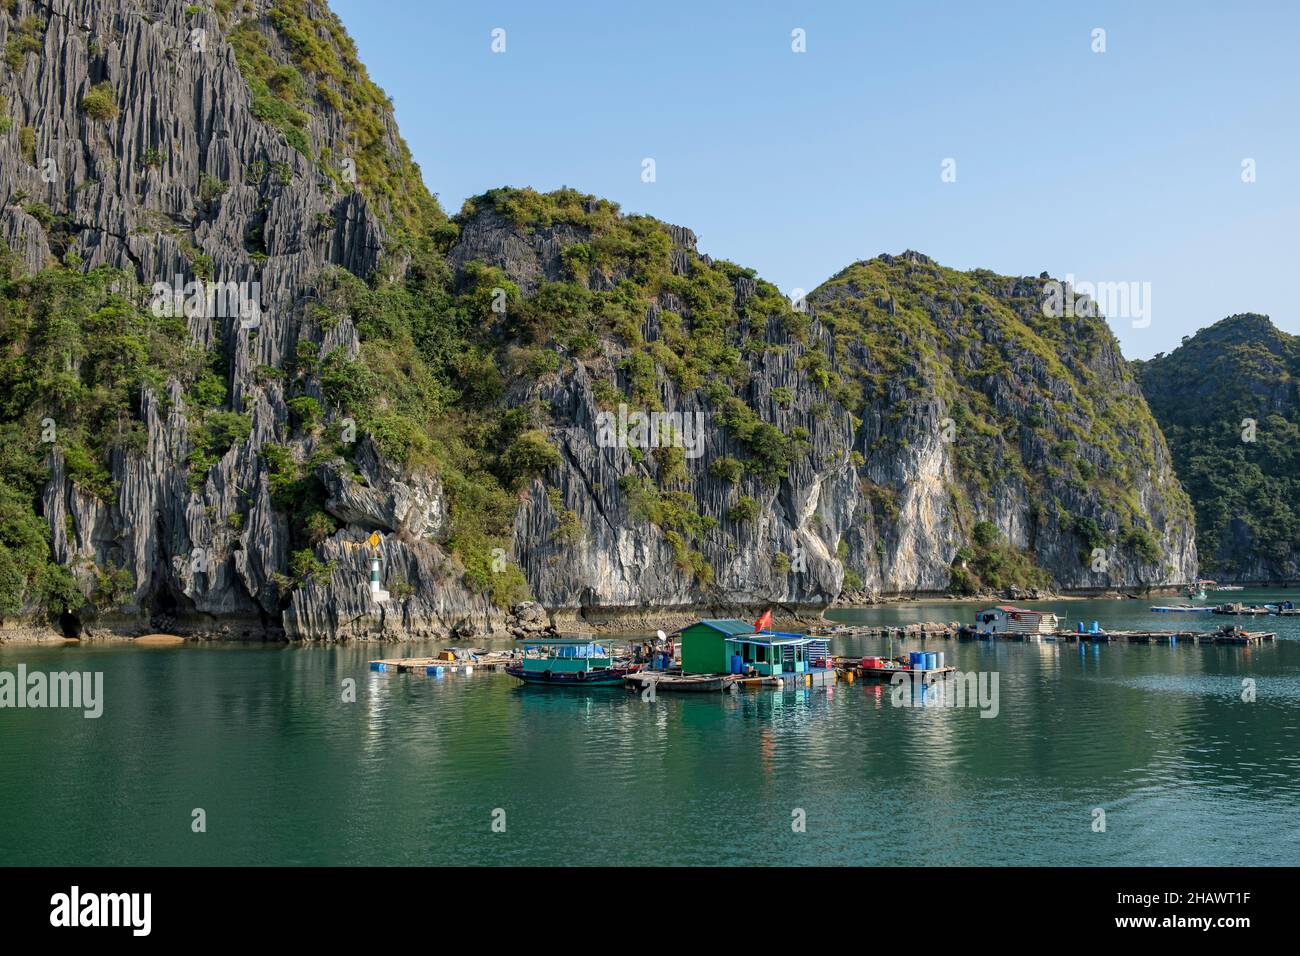 Villaggio galleggiante di pescatori sulla baia di ha Long, Vietnam settentrionale nel Golfo di Tonkin. Le persone praticano l'acquacoltura (allevamento del pesce) e la pesca tradizionale. Foto Stock